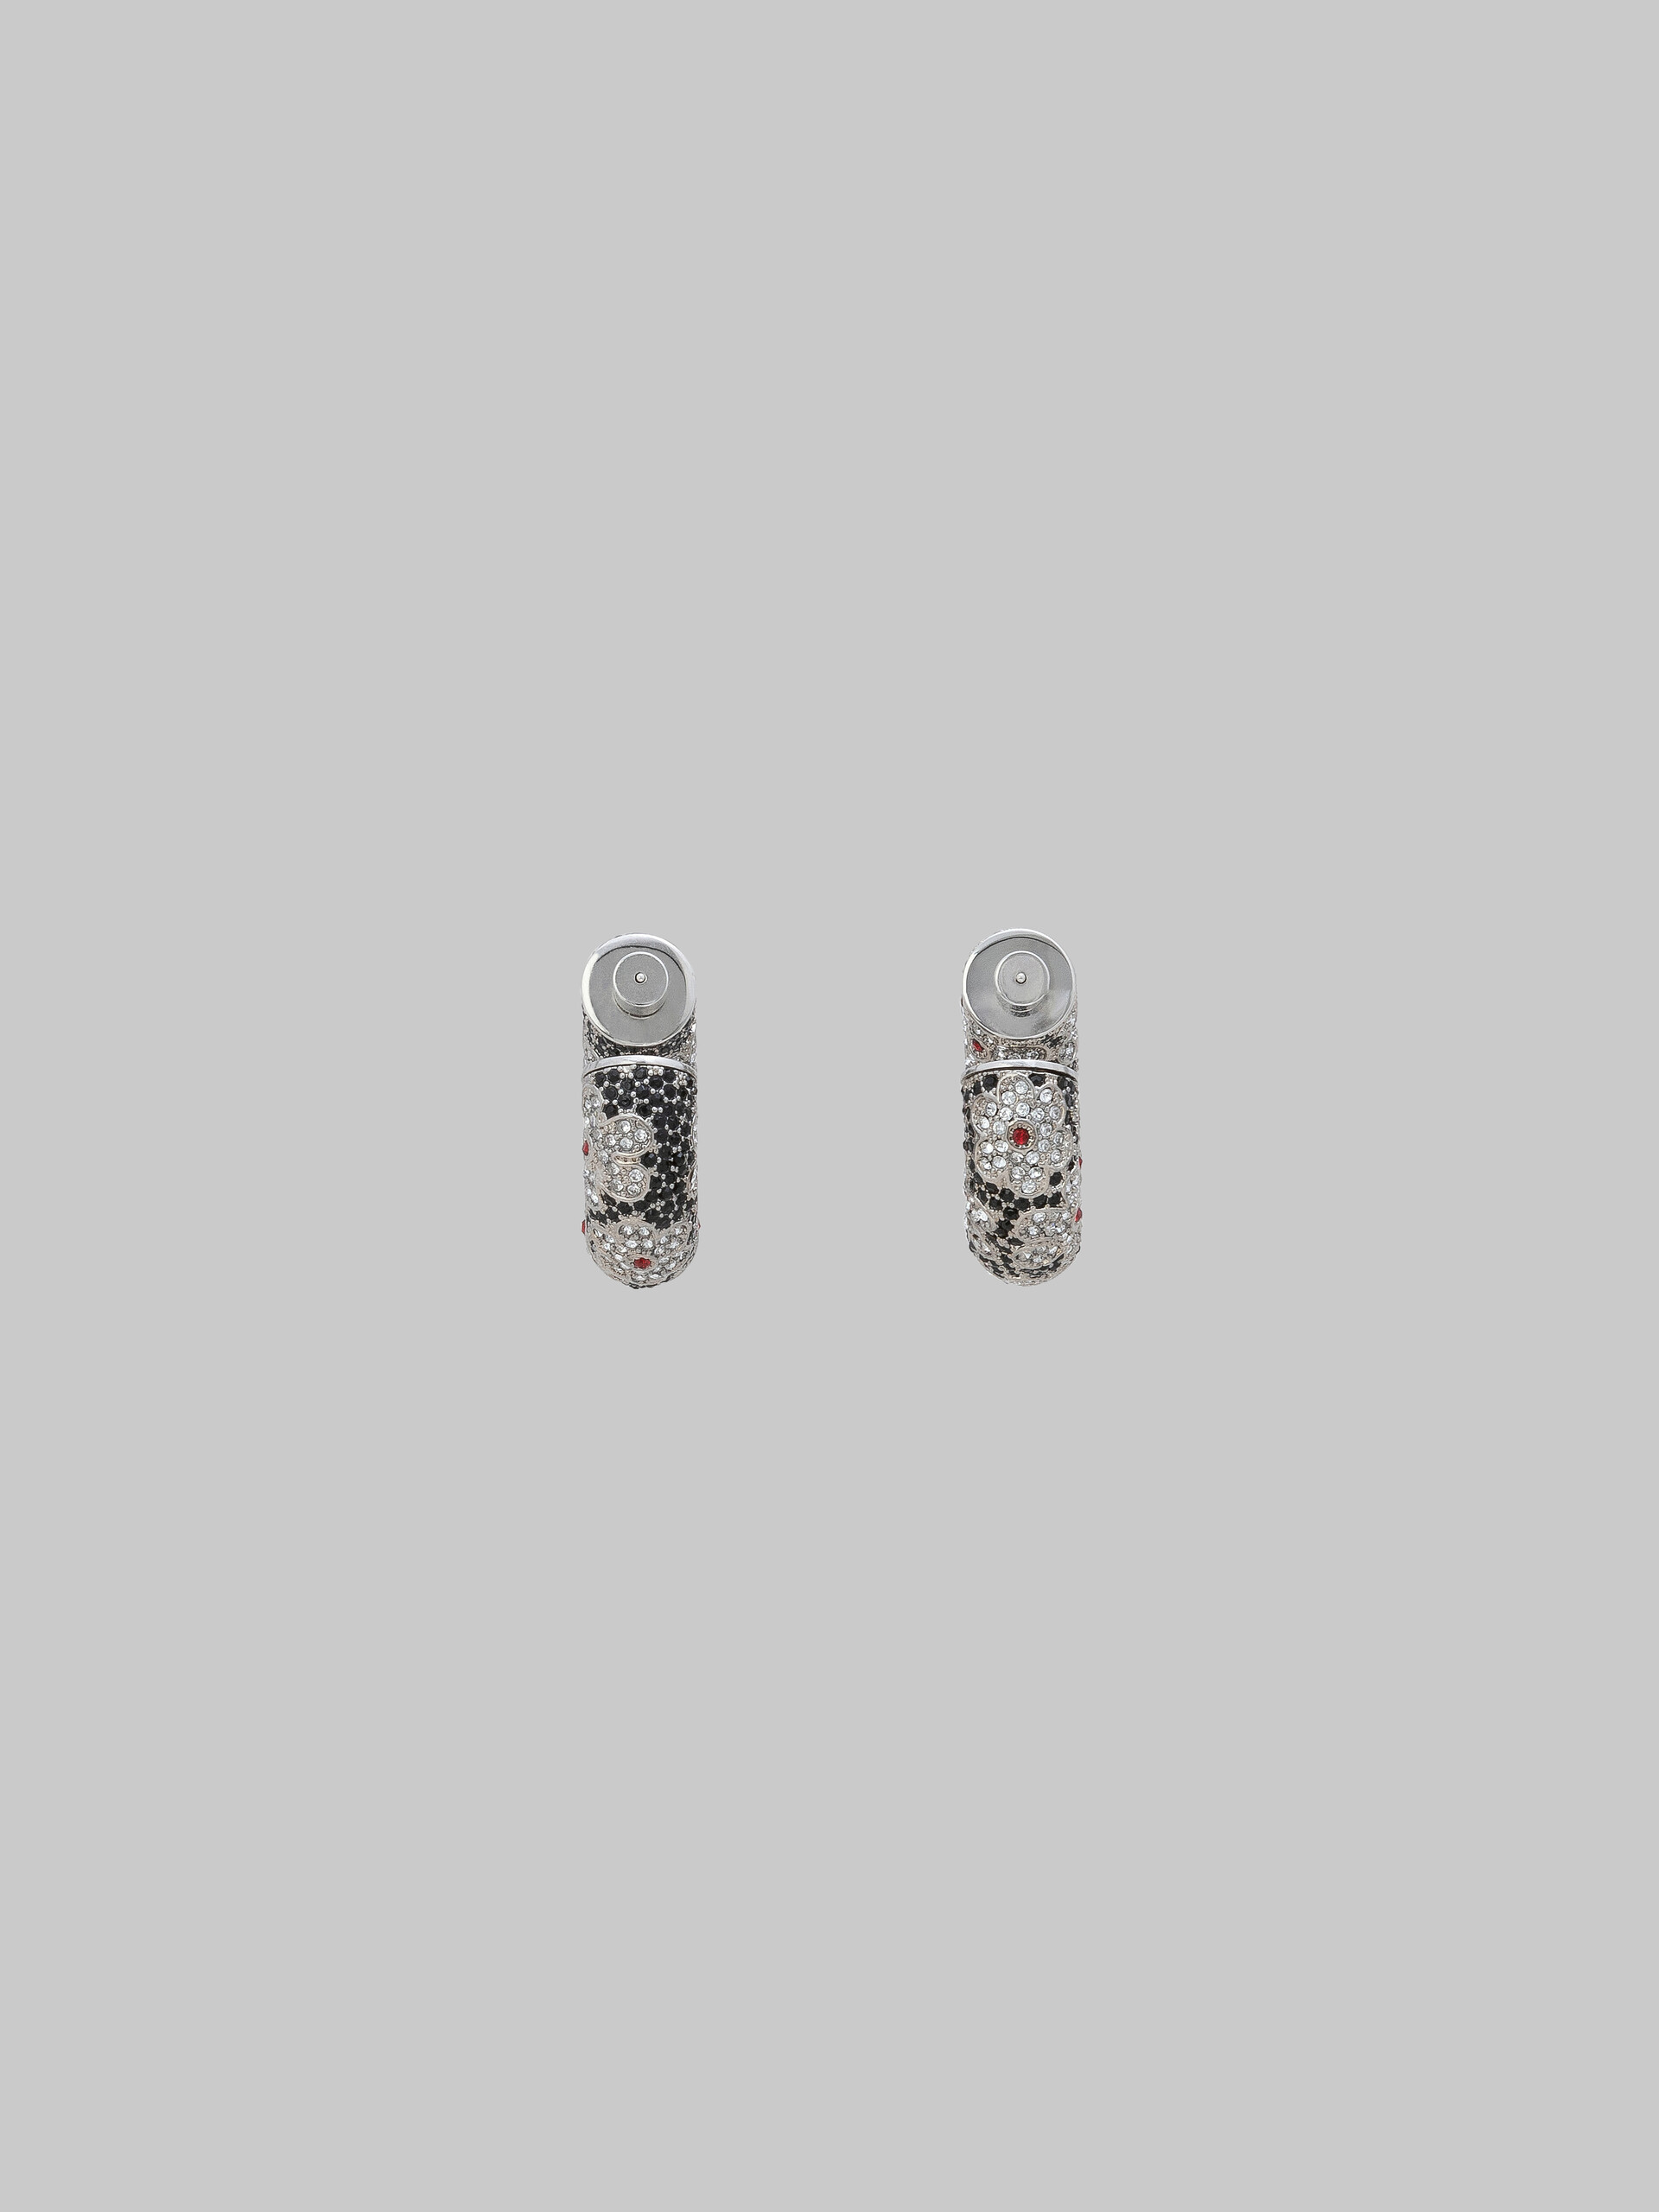 Black tube earrings with rhinstone daisies - Earrings - Image 3